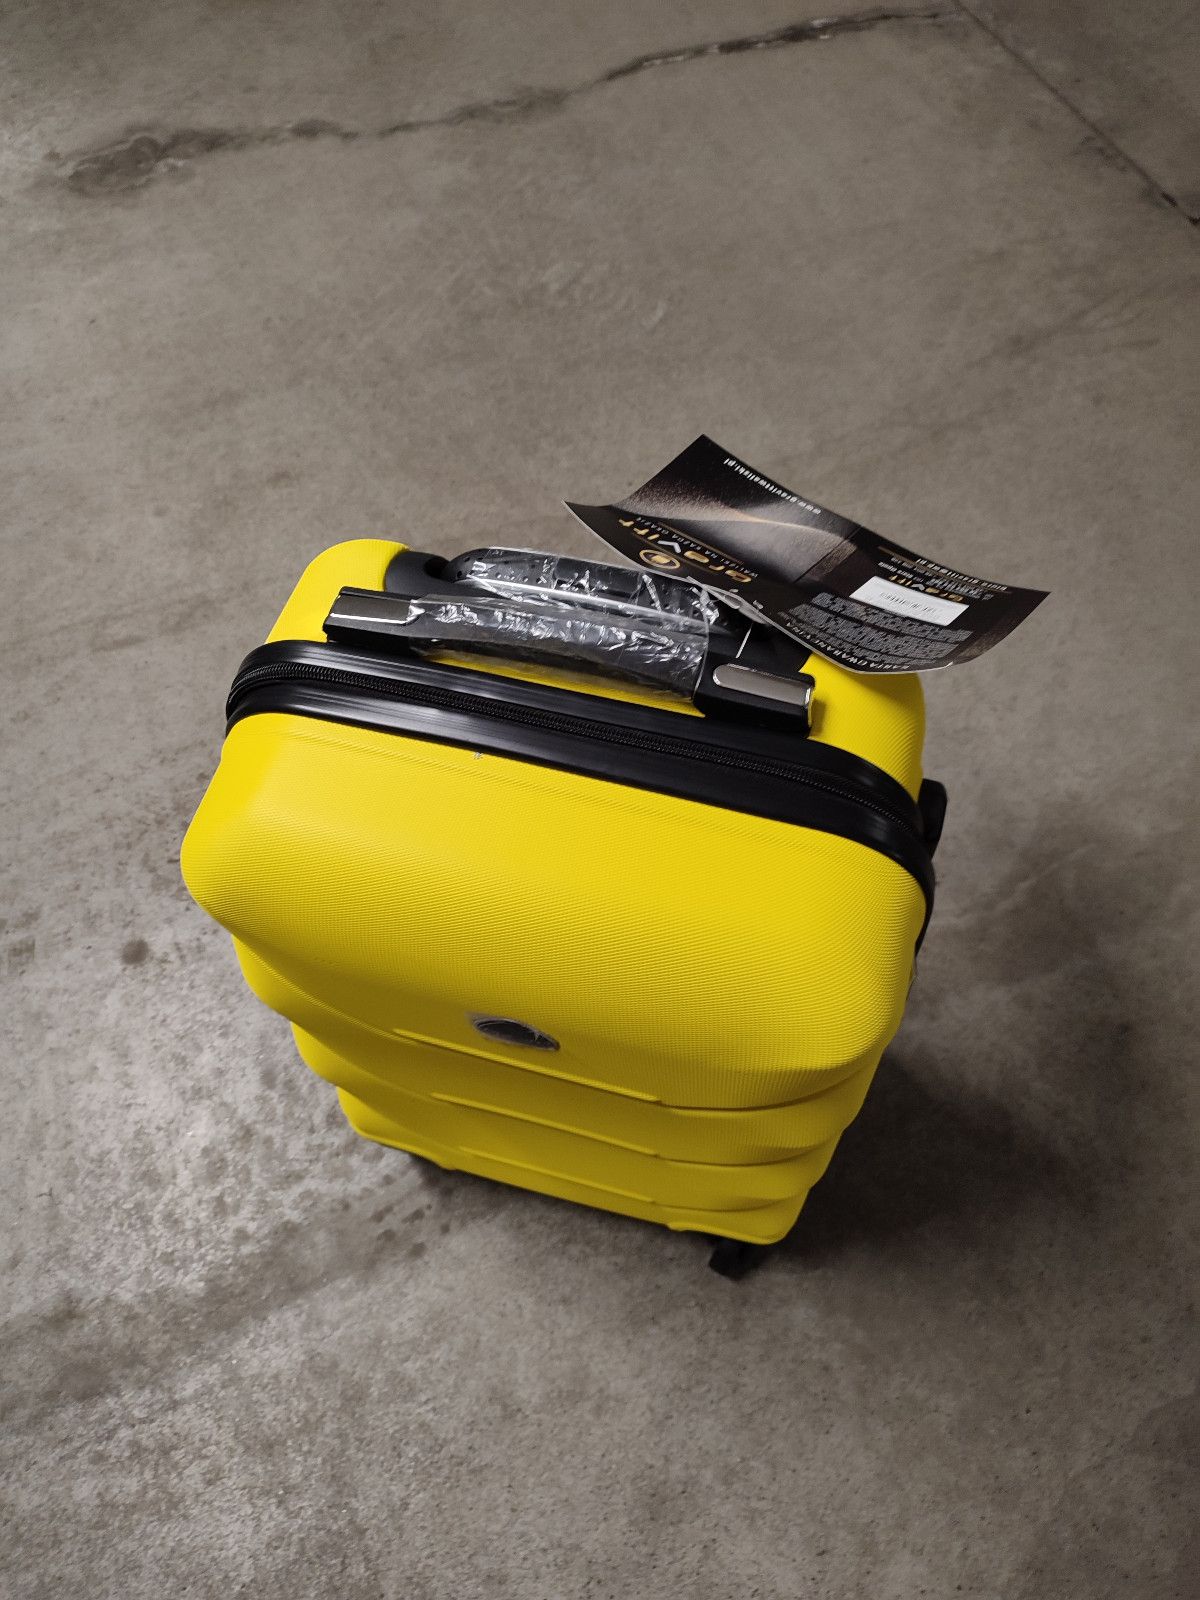 Nowa żółta walizka podróżna